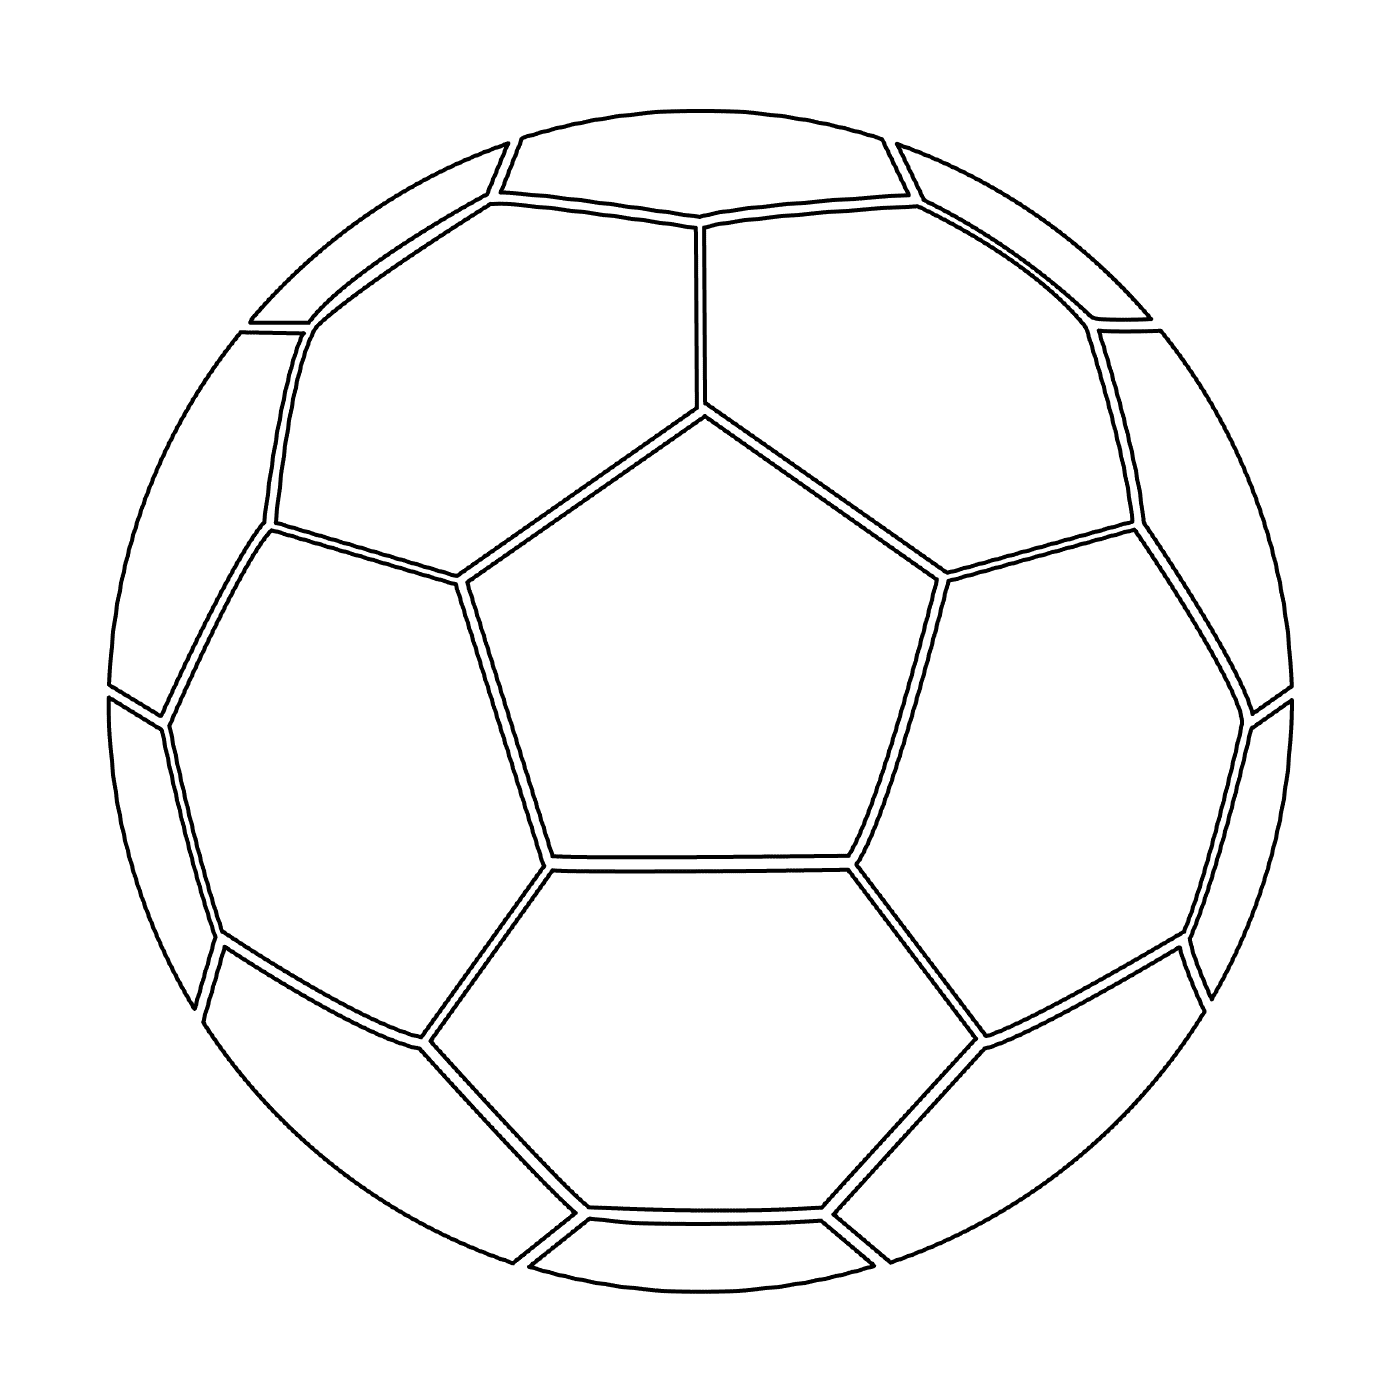  Футбольный мяч готов к игре 